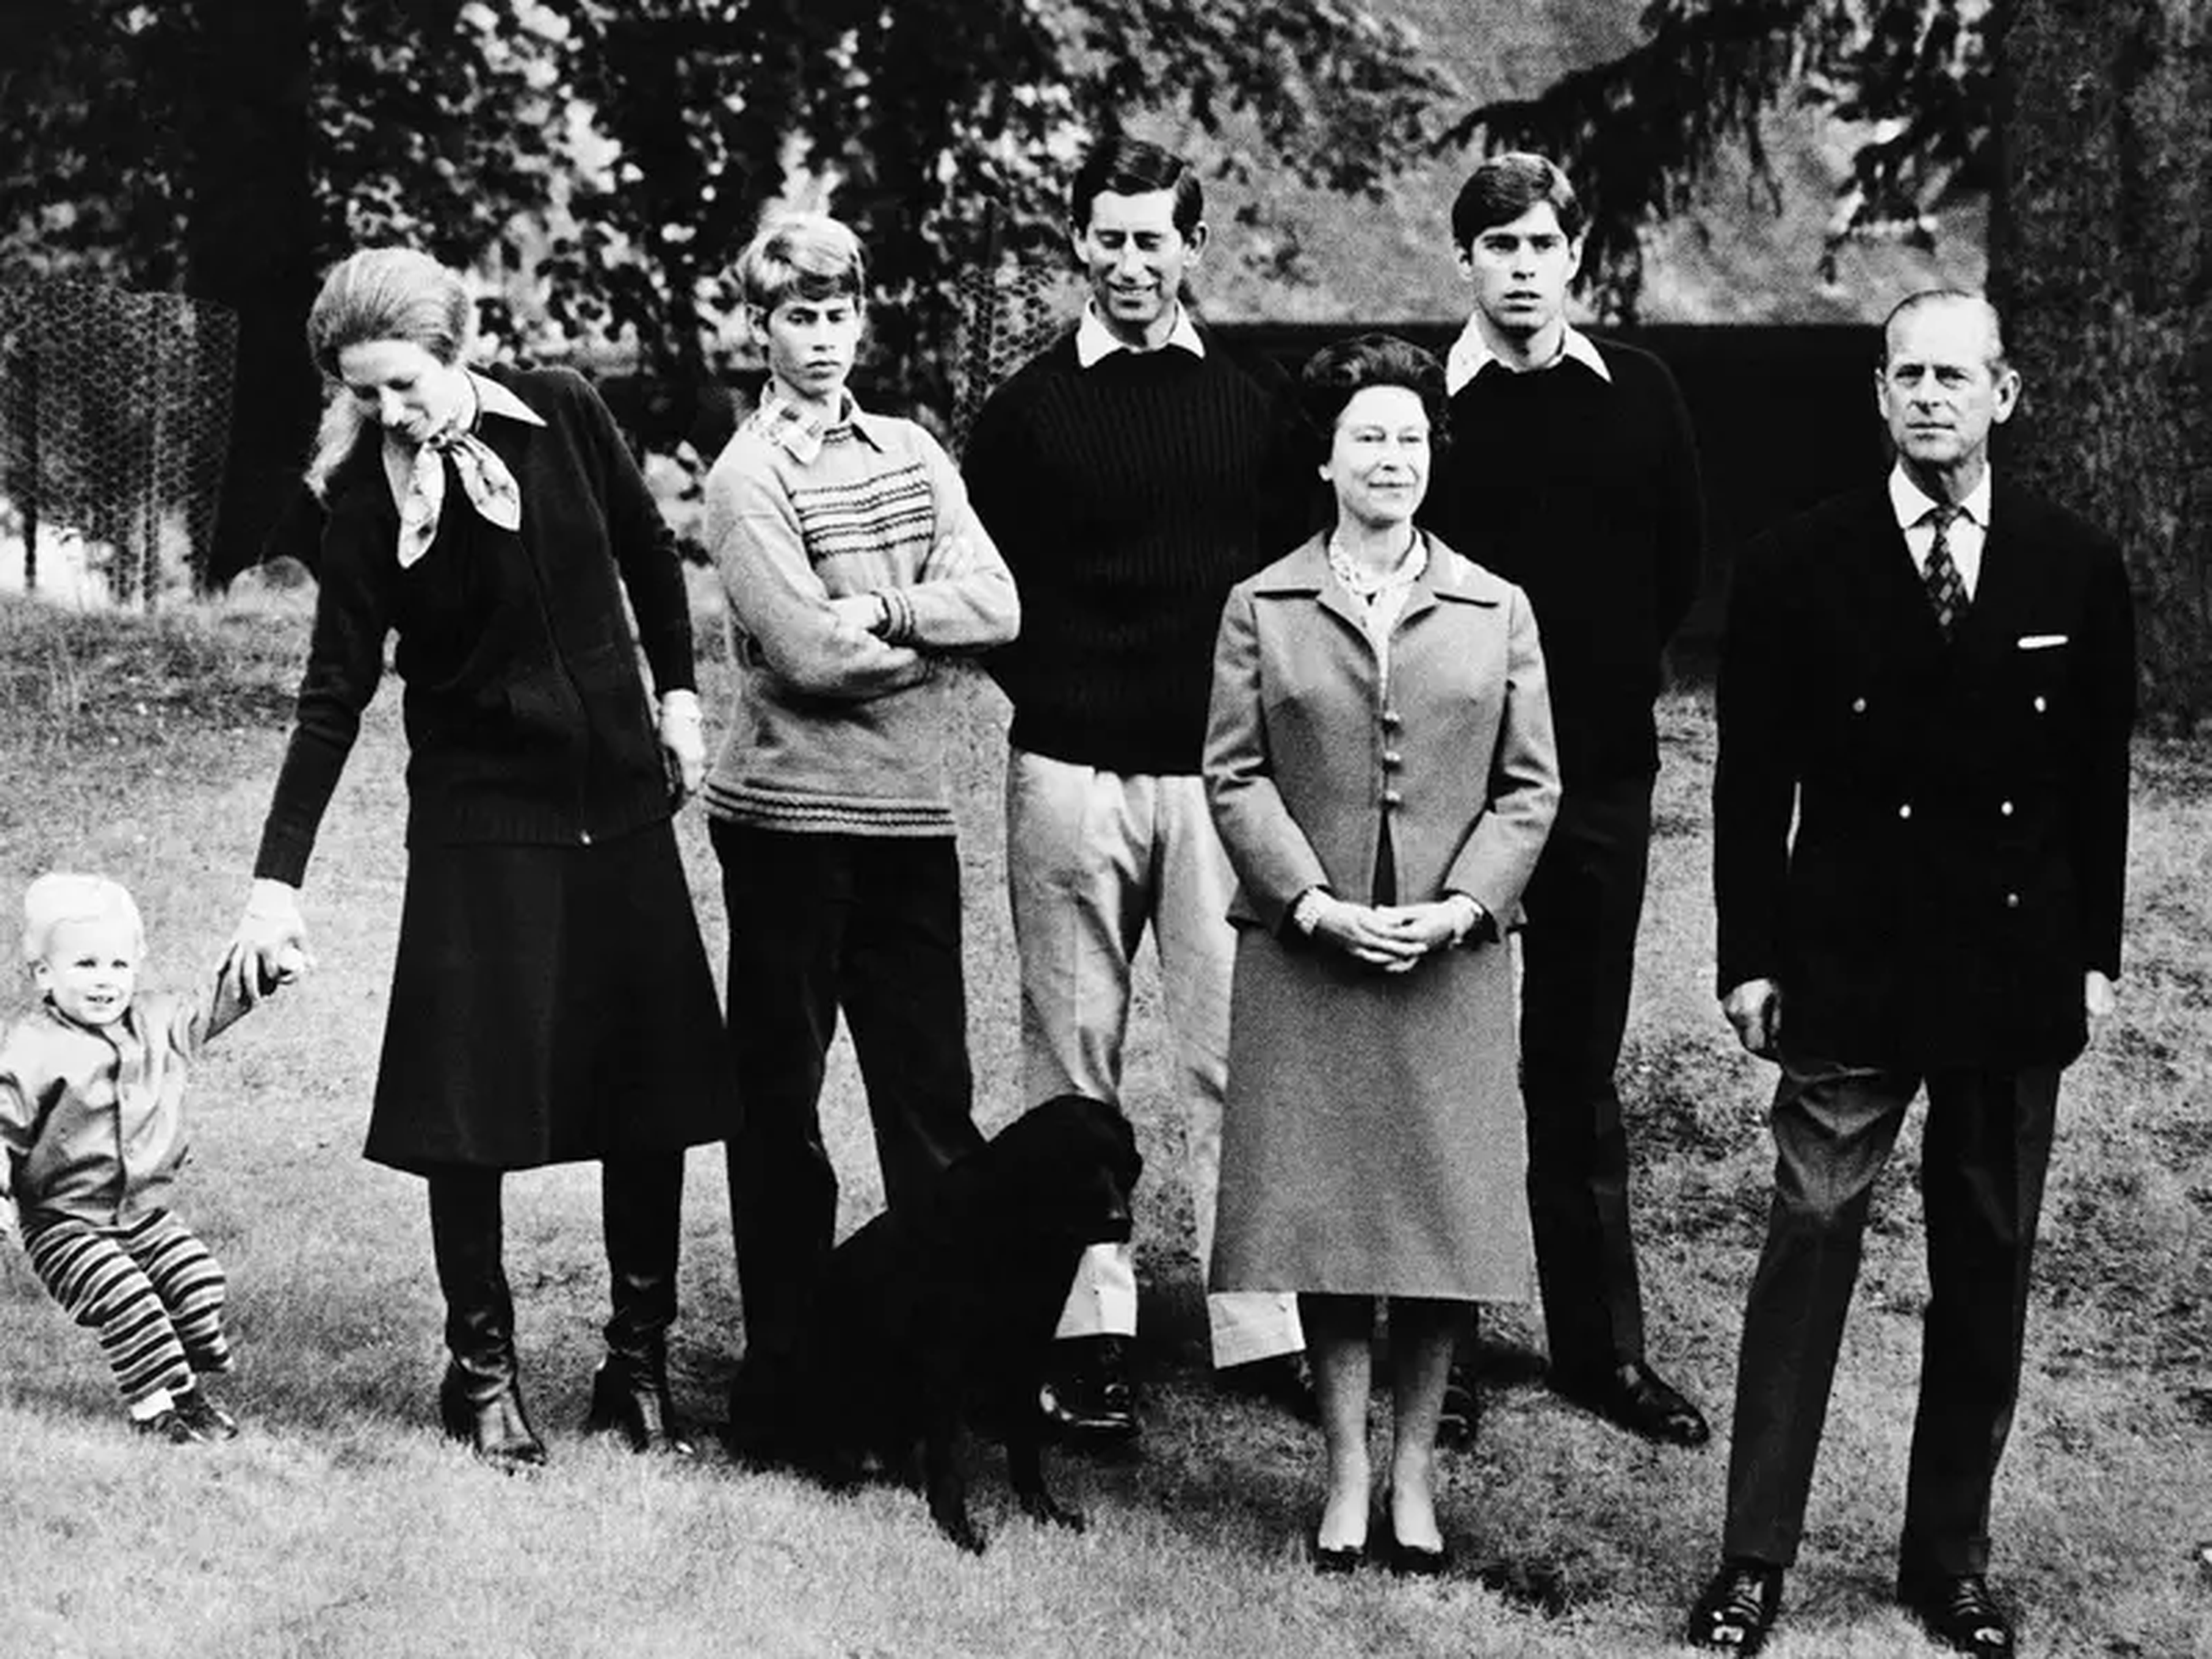 La familia real británica (de izquierda a derecha): Peter Phillips, Ana, princesa real, el príncipe Eduardo, conde de Wessex, el príncipe Carlos, príncipe de Gales, la reina Isabel, el príncipe Andrés, duque de York, y el príncipe Felipe.